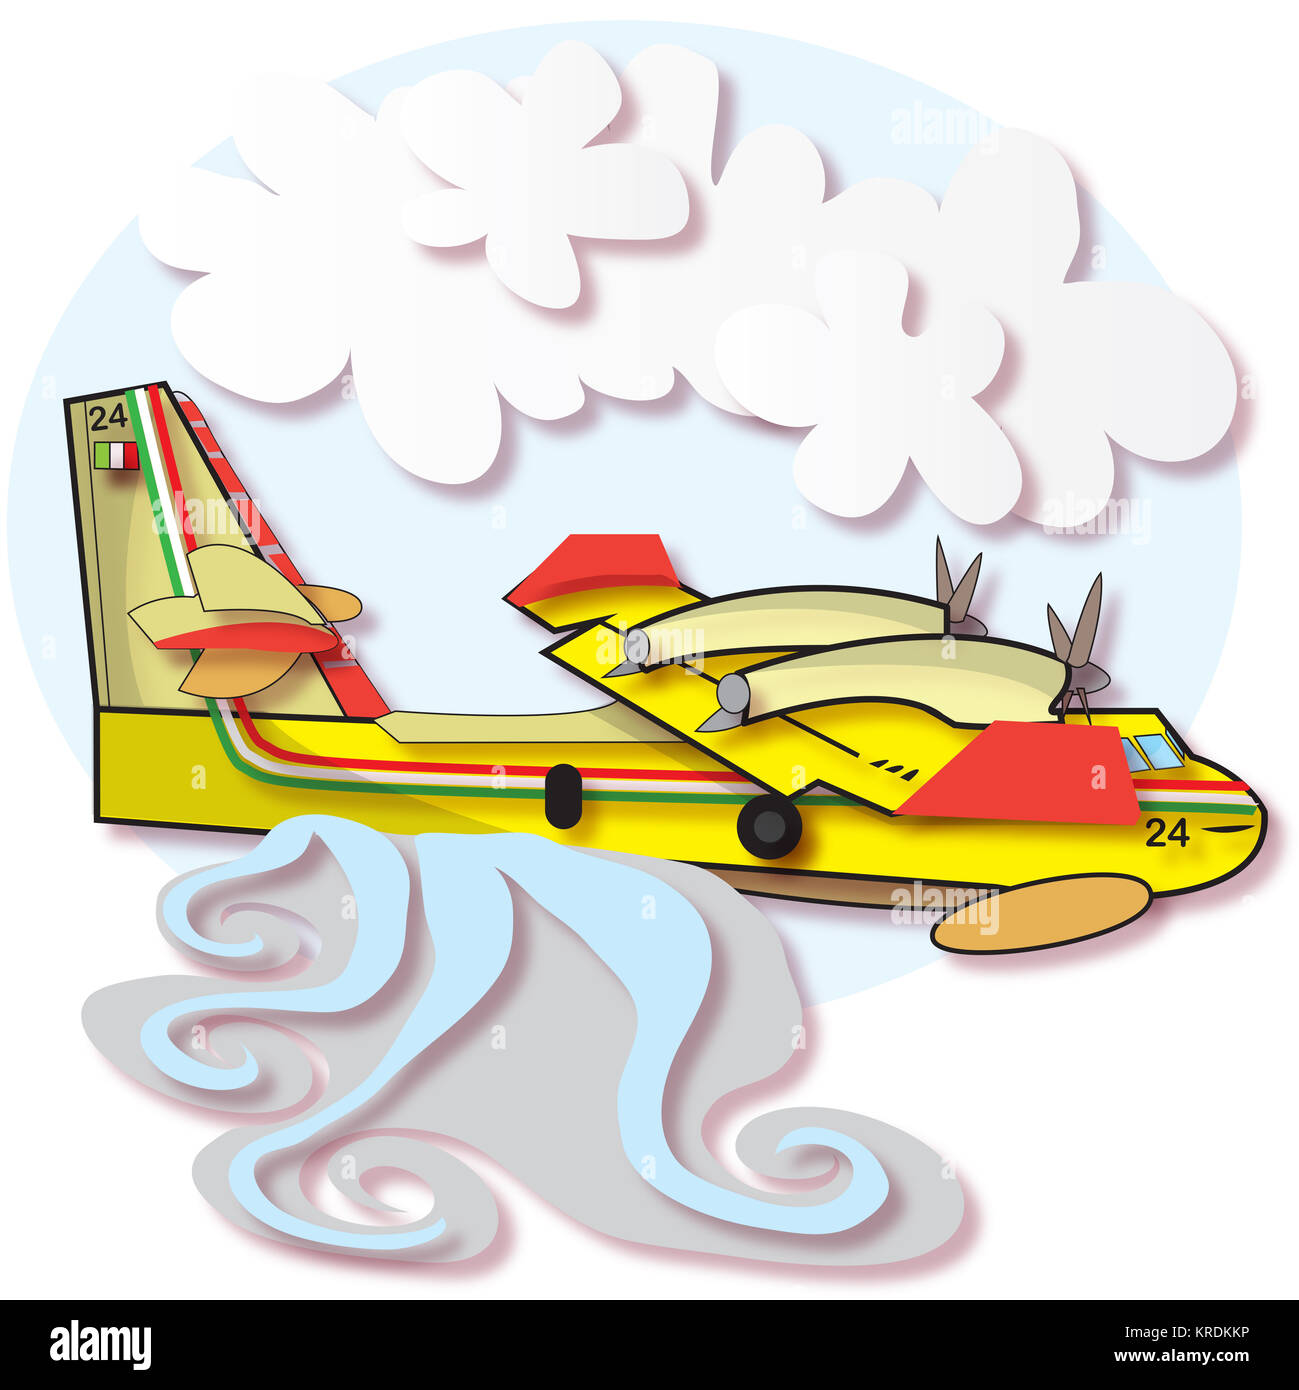 Cette illustration représente un avion Canadair tout en jetant de l'eau, lumière et ciel avec ablue quelques nuages. Banque D'Images